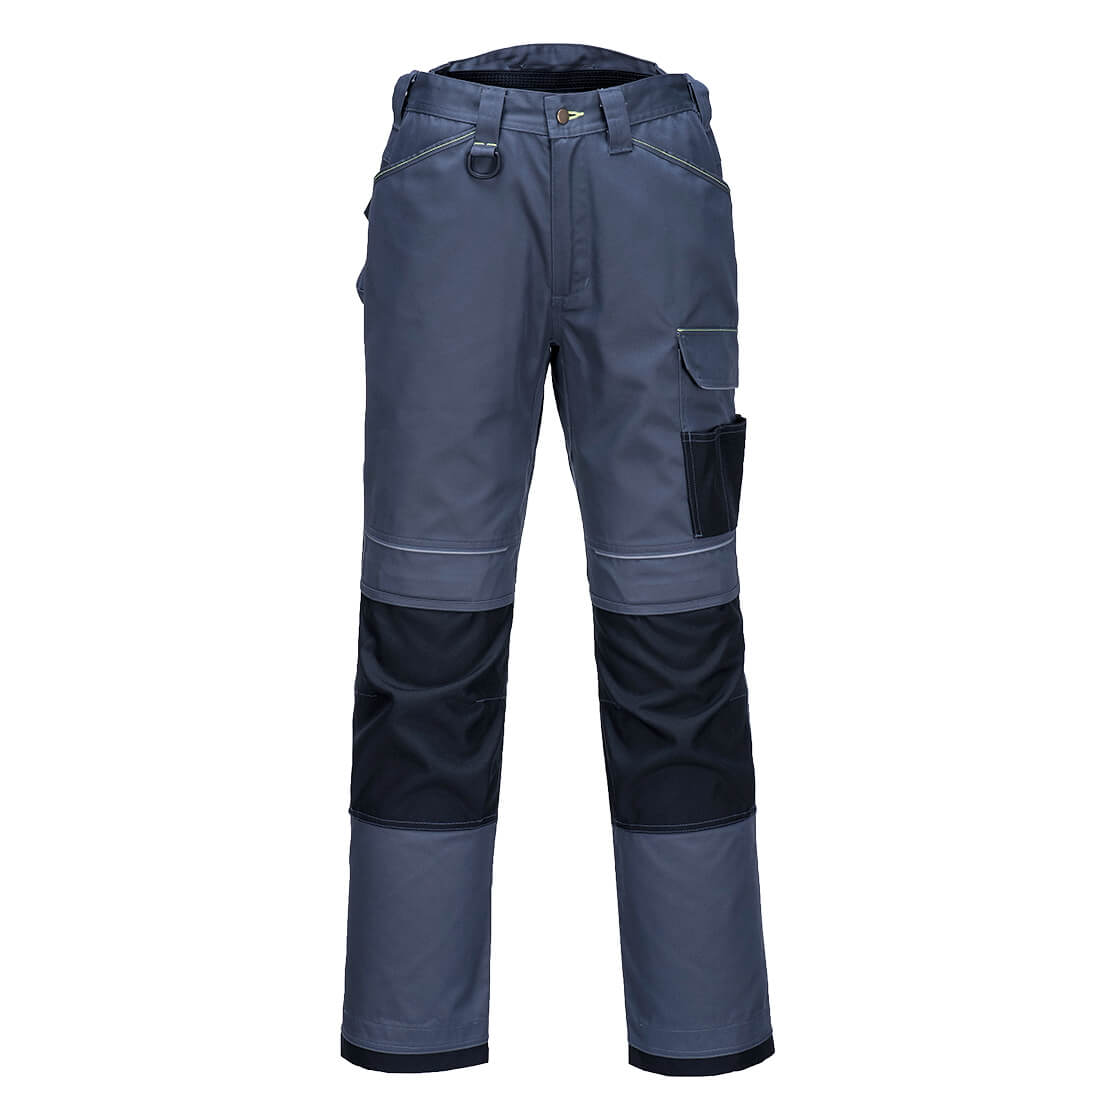 PW3 Lightweight Stretch Trouser - arbeitskleidung-gmbh